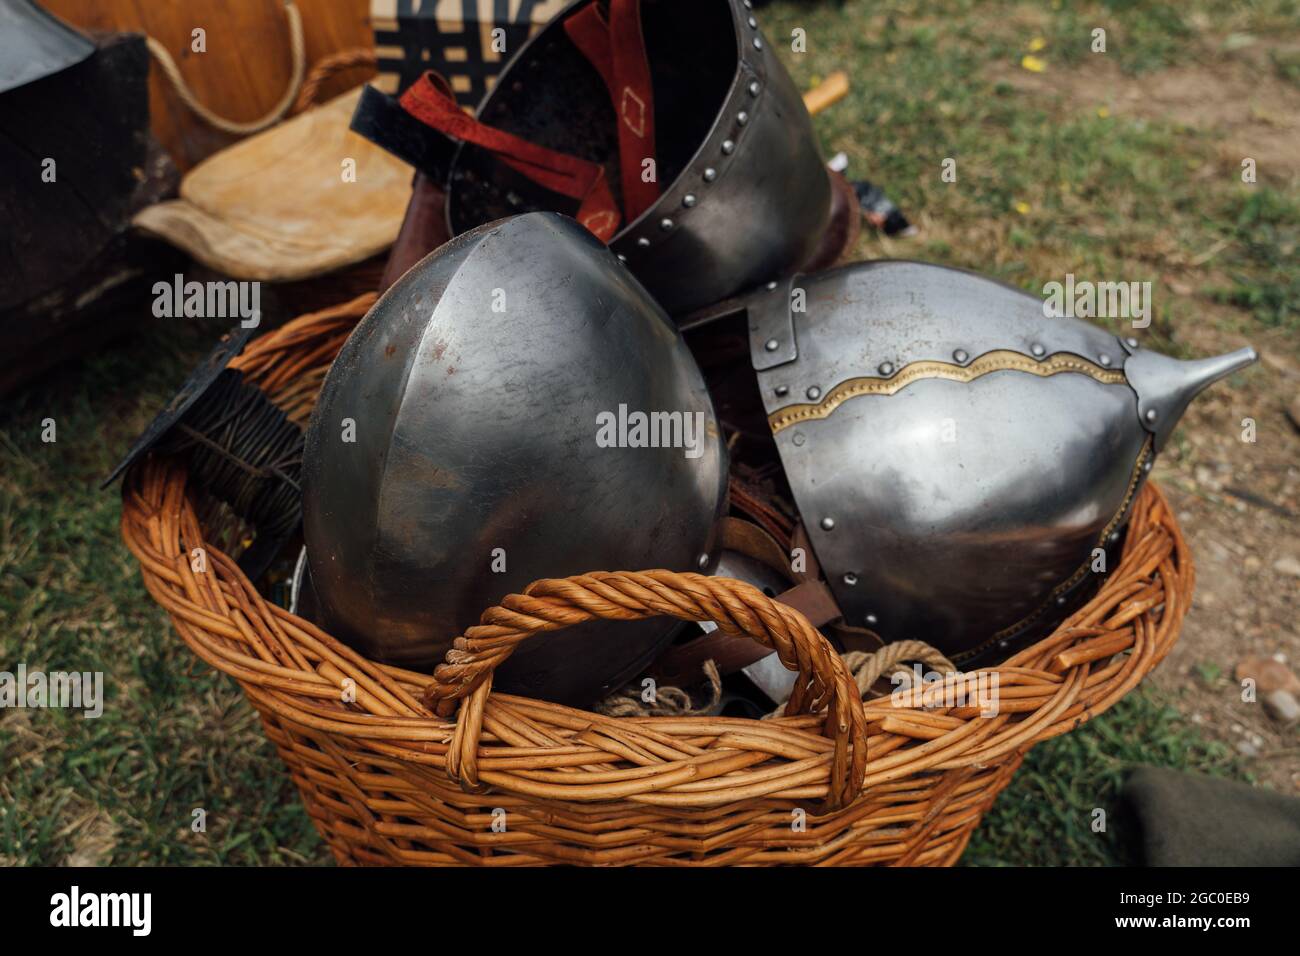 Nahaufnahme von alten mittelalterlichen Ritter Metallhelmen im Korb, die  draußen auf den Boden gelegt wurden Stockfotografie - Alamy